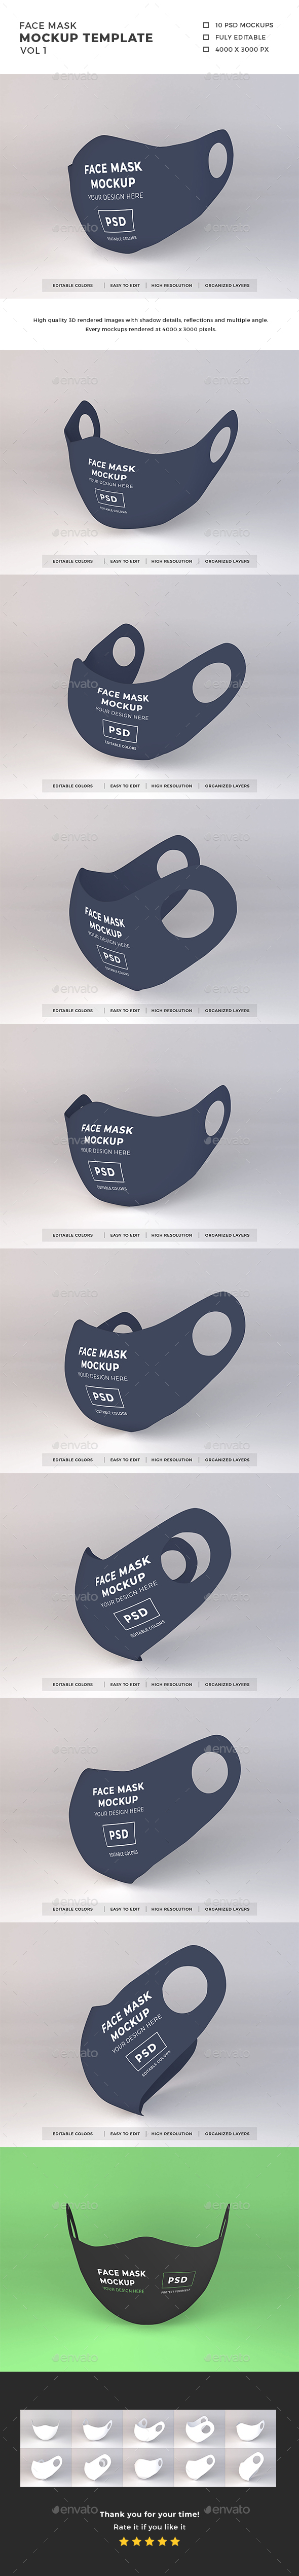 Download Masks Mockup Graphics Designs Templates From Graphicriver PSD Mockup Templates